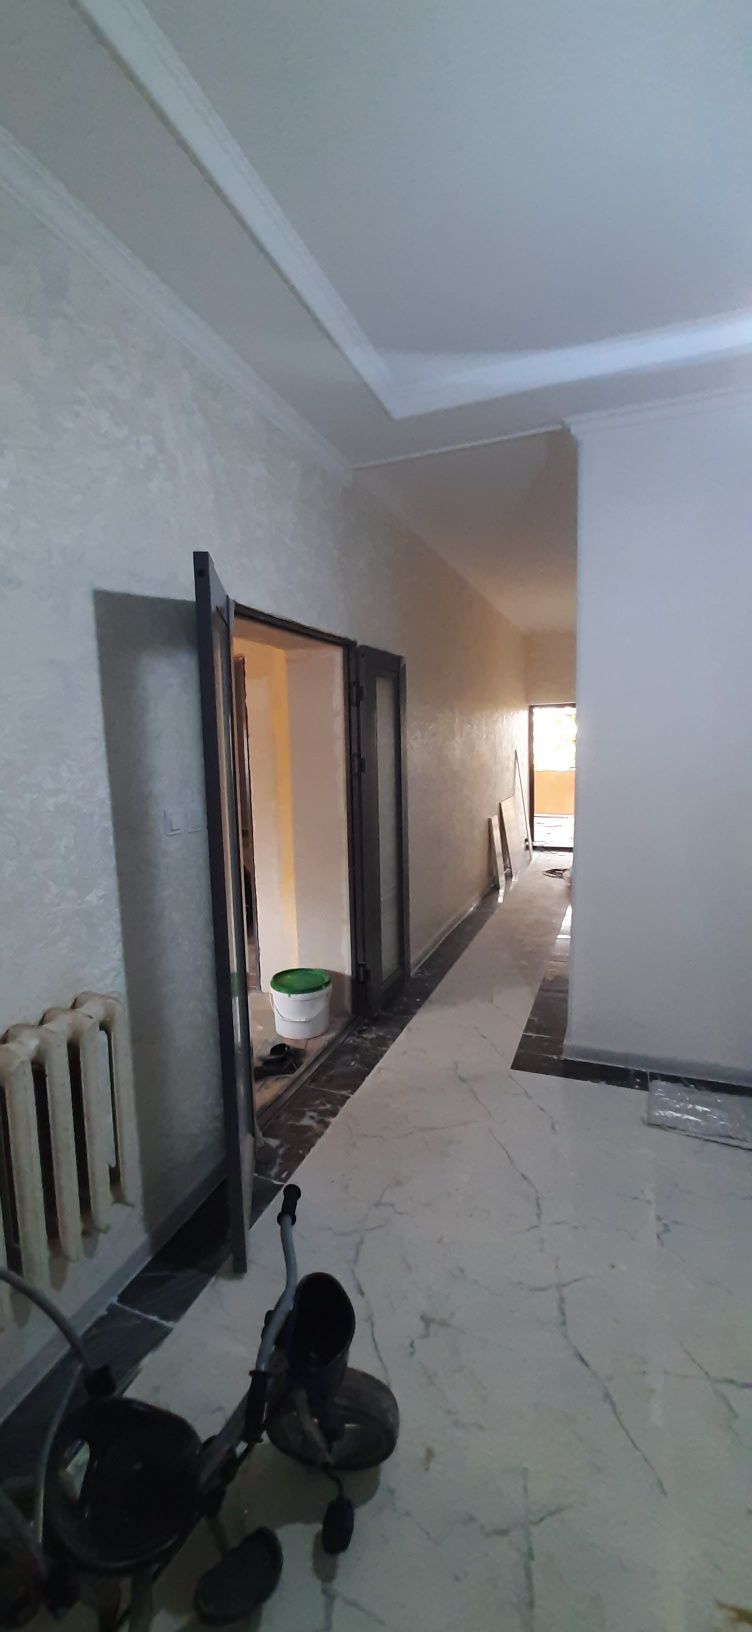 Дом квартира ремонт ислеймыз